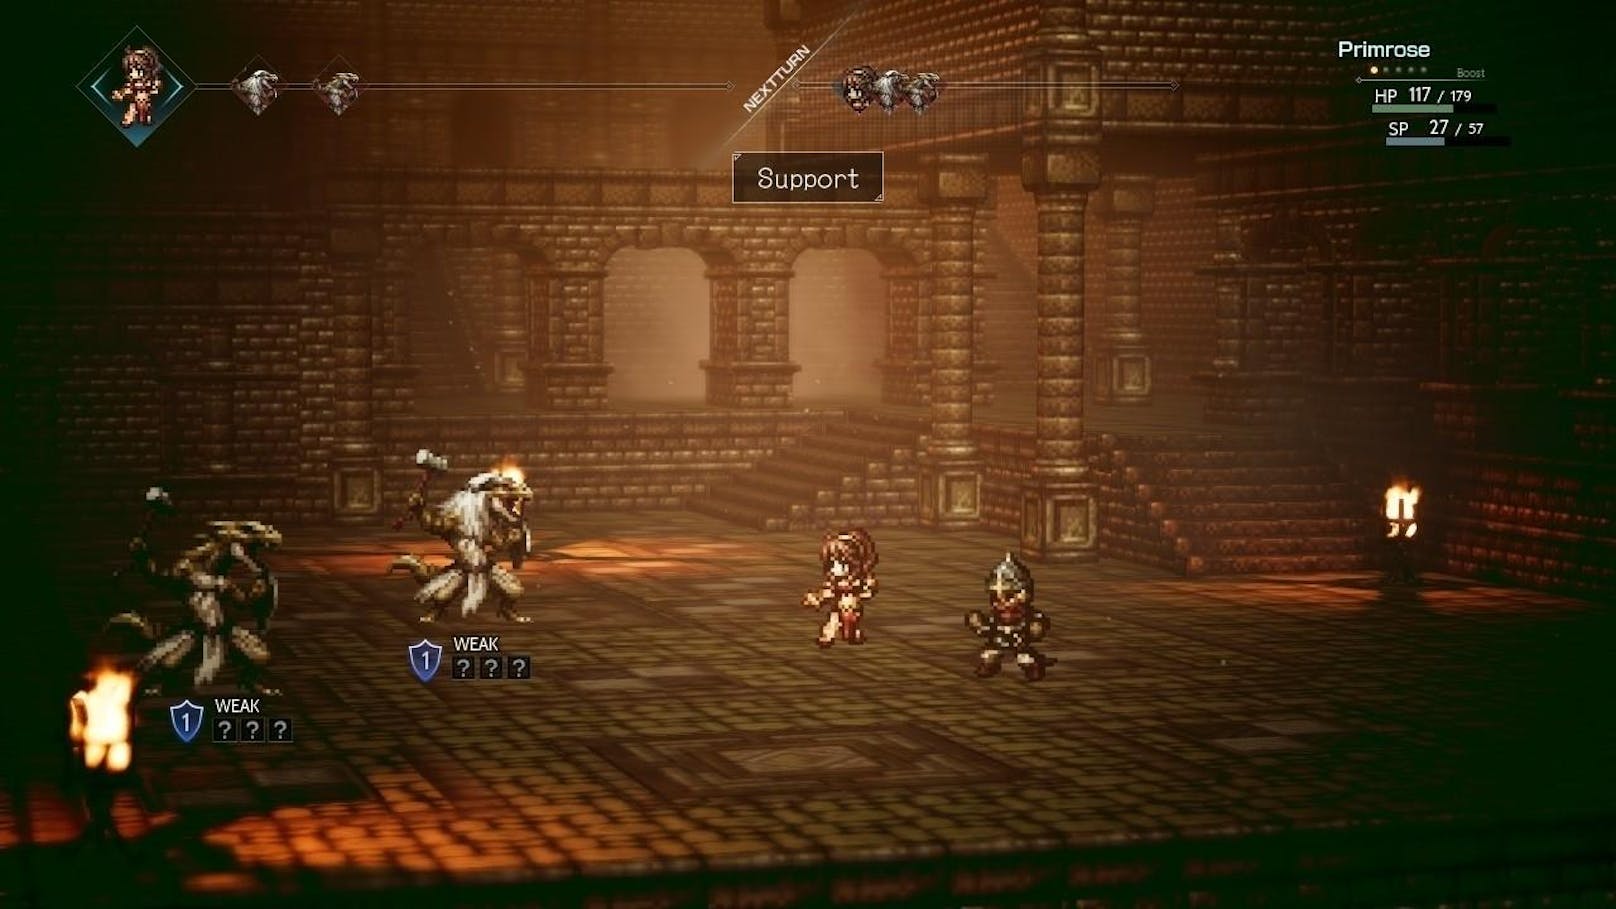 Der Spieler kann sich am Anfang des Games einen dieser acht Recken aussuchen und nach dem ersten Kapitel auf die Suche nach den anderen sieben Charakteren und ihren Geschichten machen.